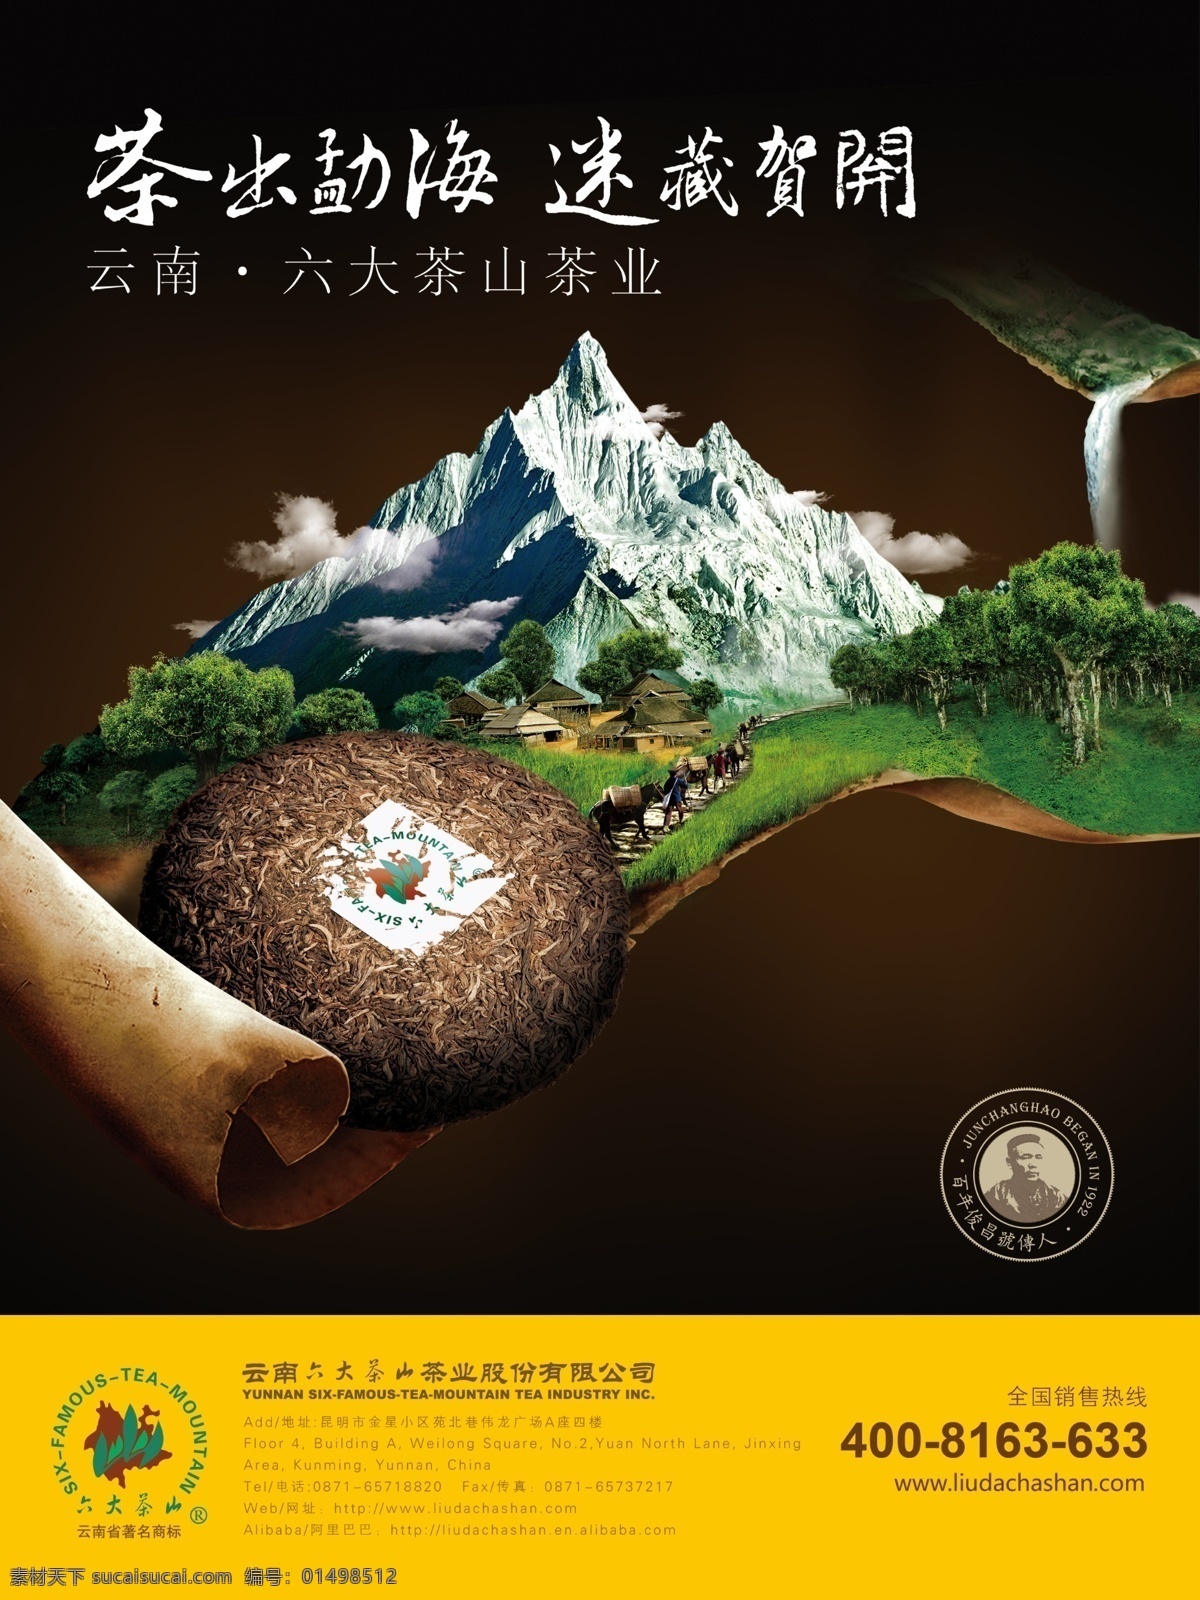 六大 茶山 茶饼 茶叶 广告 山水 宣传 中国文化 海报 六大茶山 原创设计 原创海报